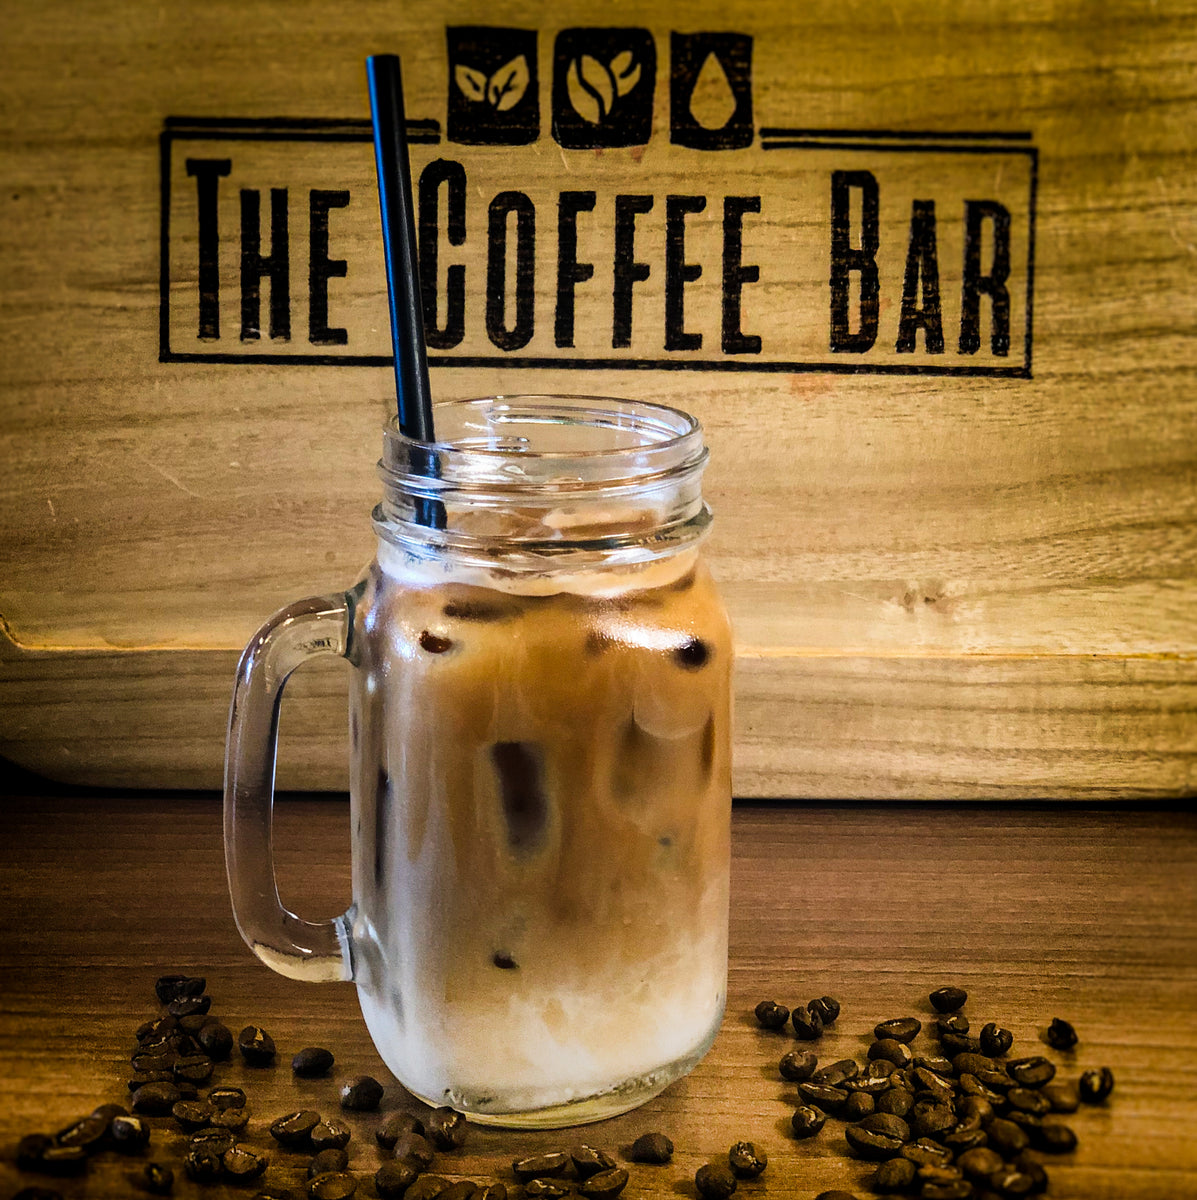 Latte en las rocas – THE COFFEE BAR